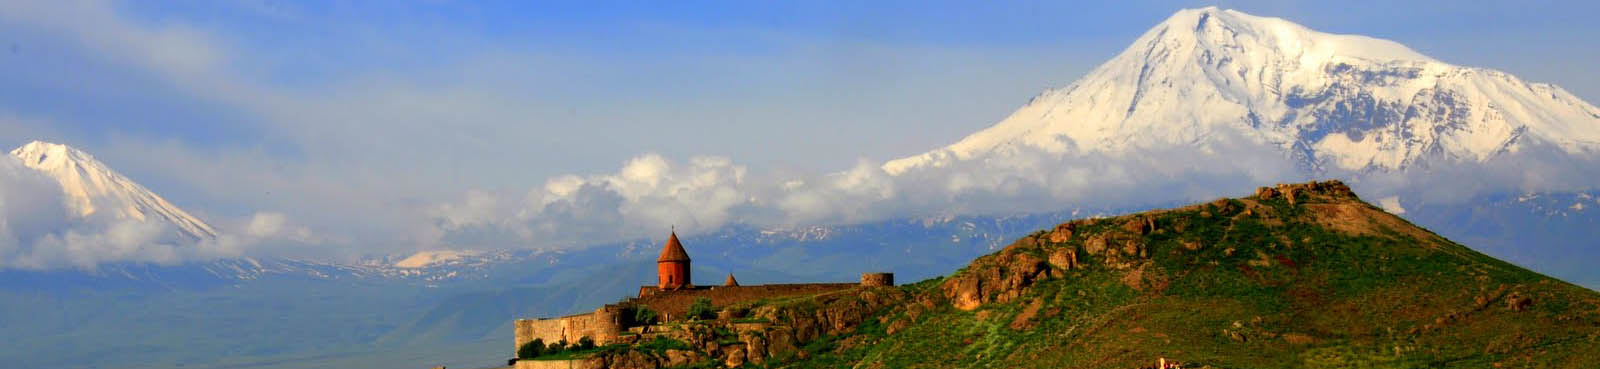 Armenien: Khor Virap mit Ararat